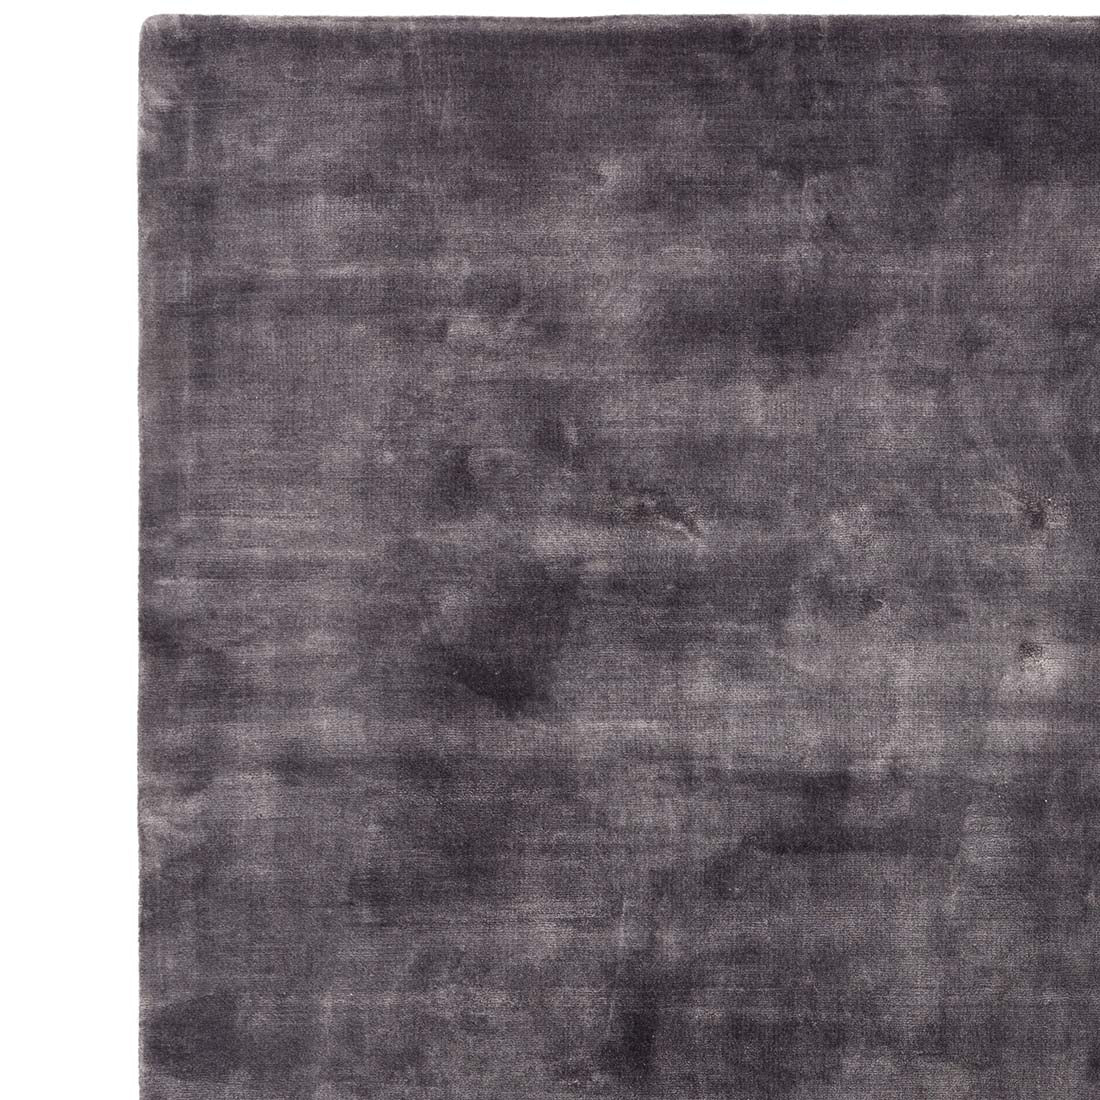 shiny dark grey modern rug in a plain style
